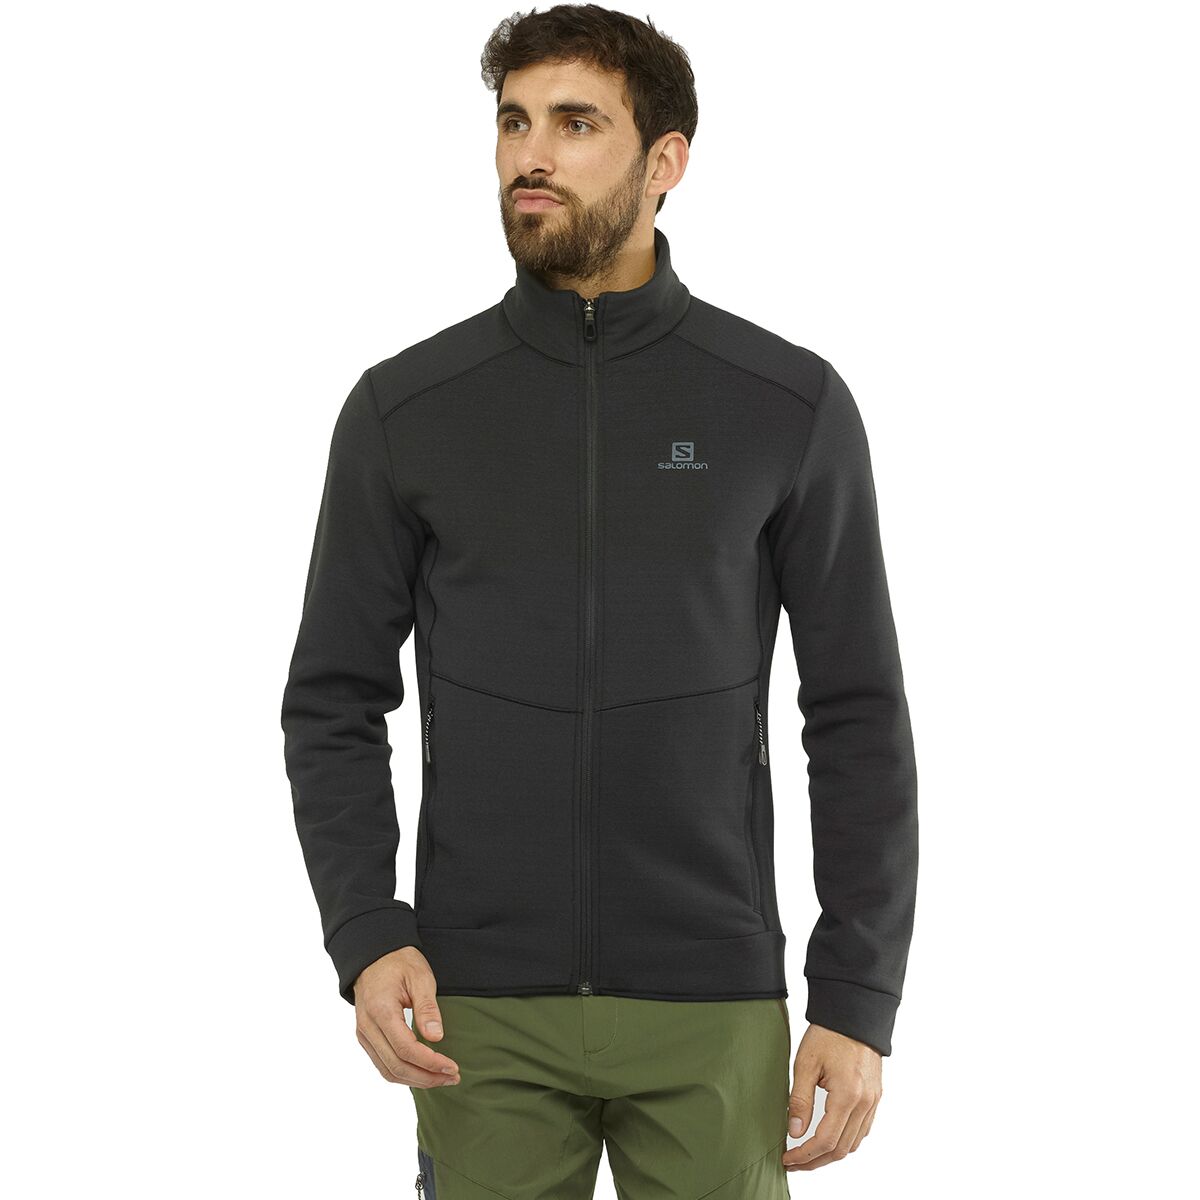 Salomon Radiant Full-Zip Fleece Jacket - Men's - Clothing